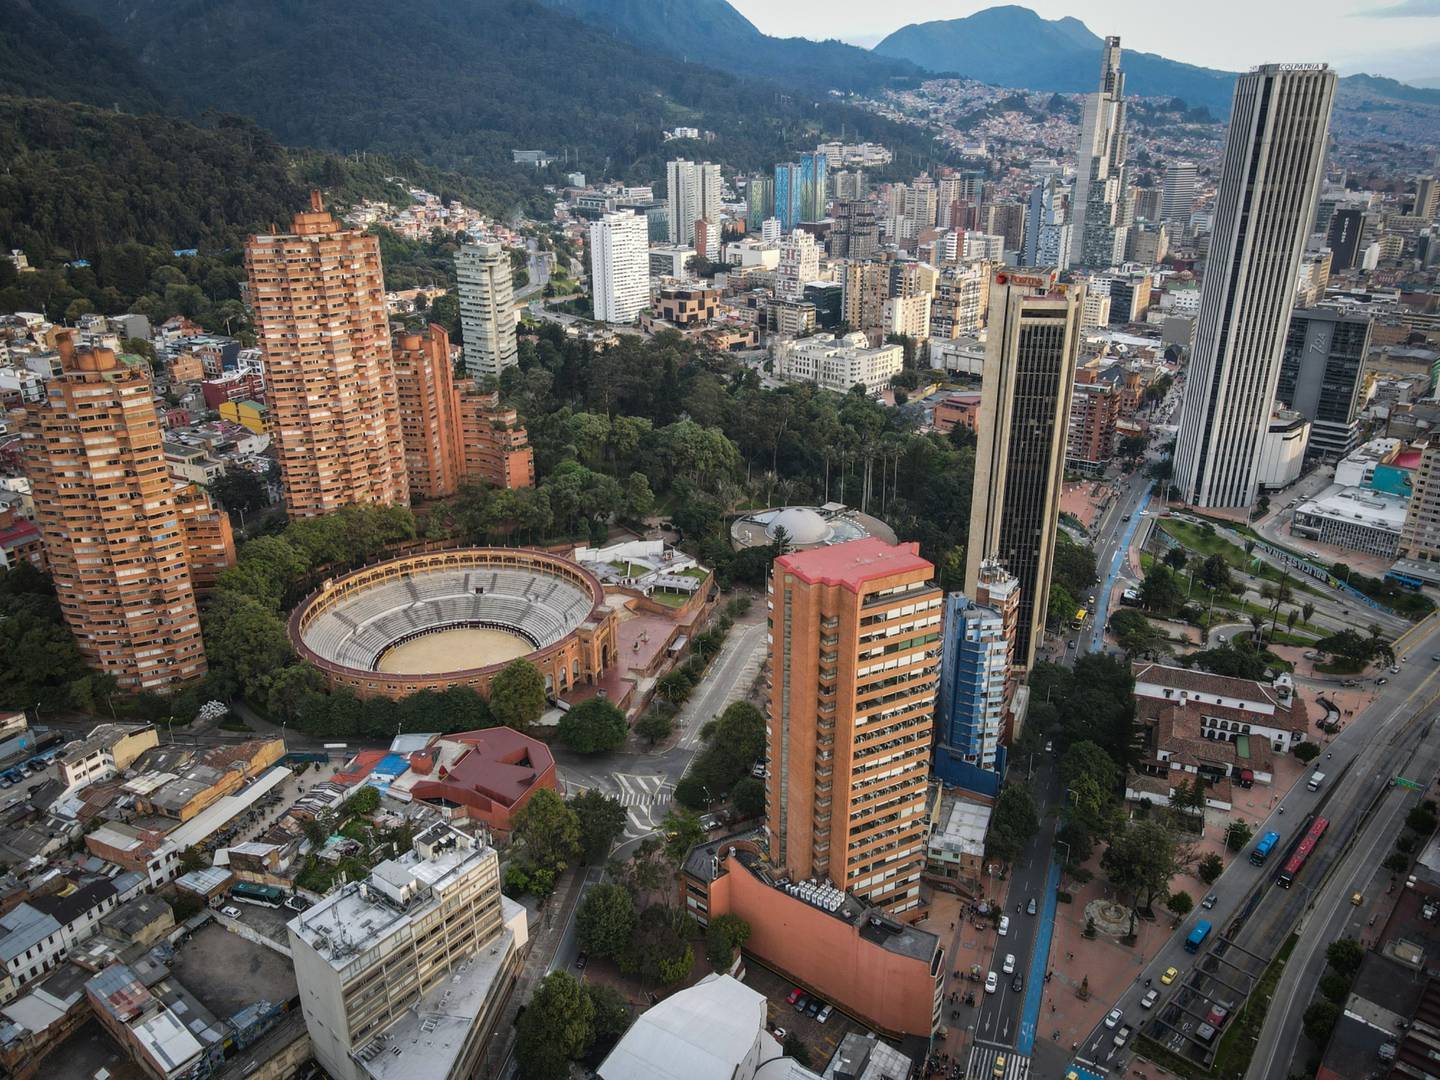 Bogotá, Colombia, on Saturday, April 9, 2022.